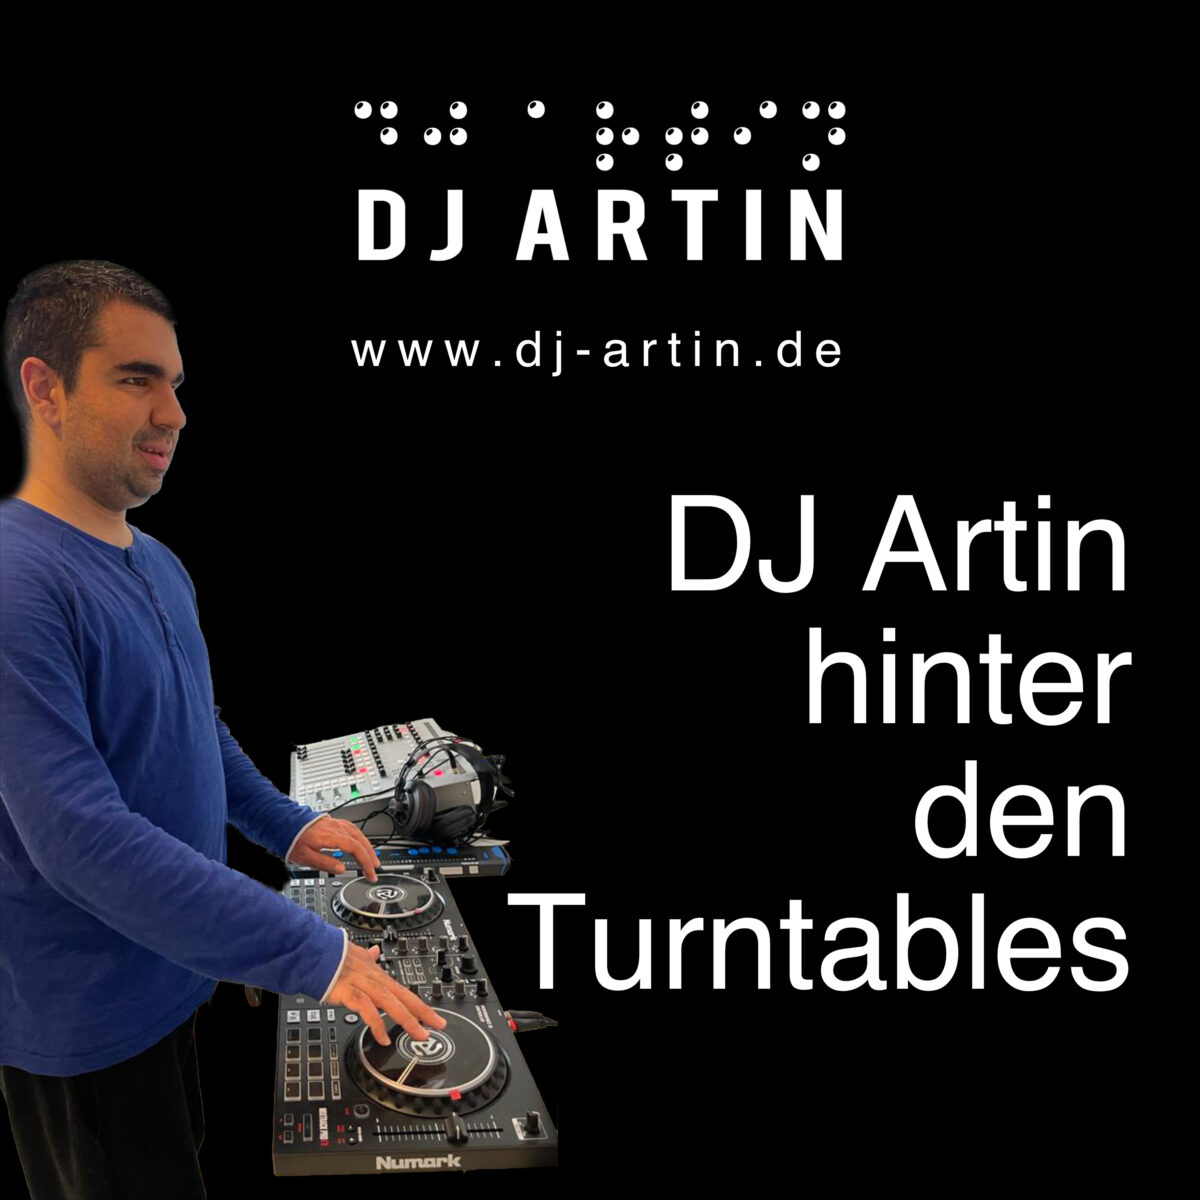 DJ Artin hinter den Turntables